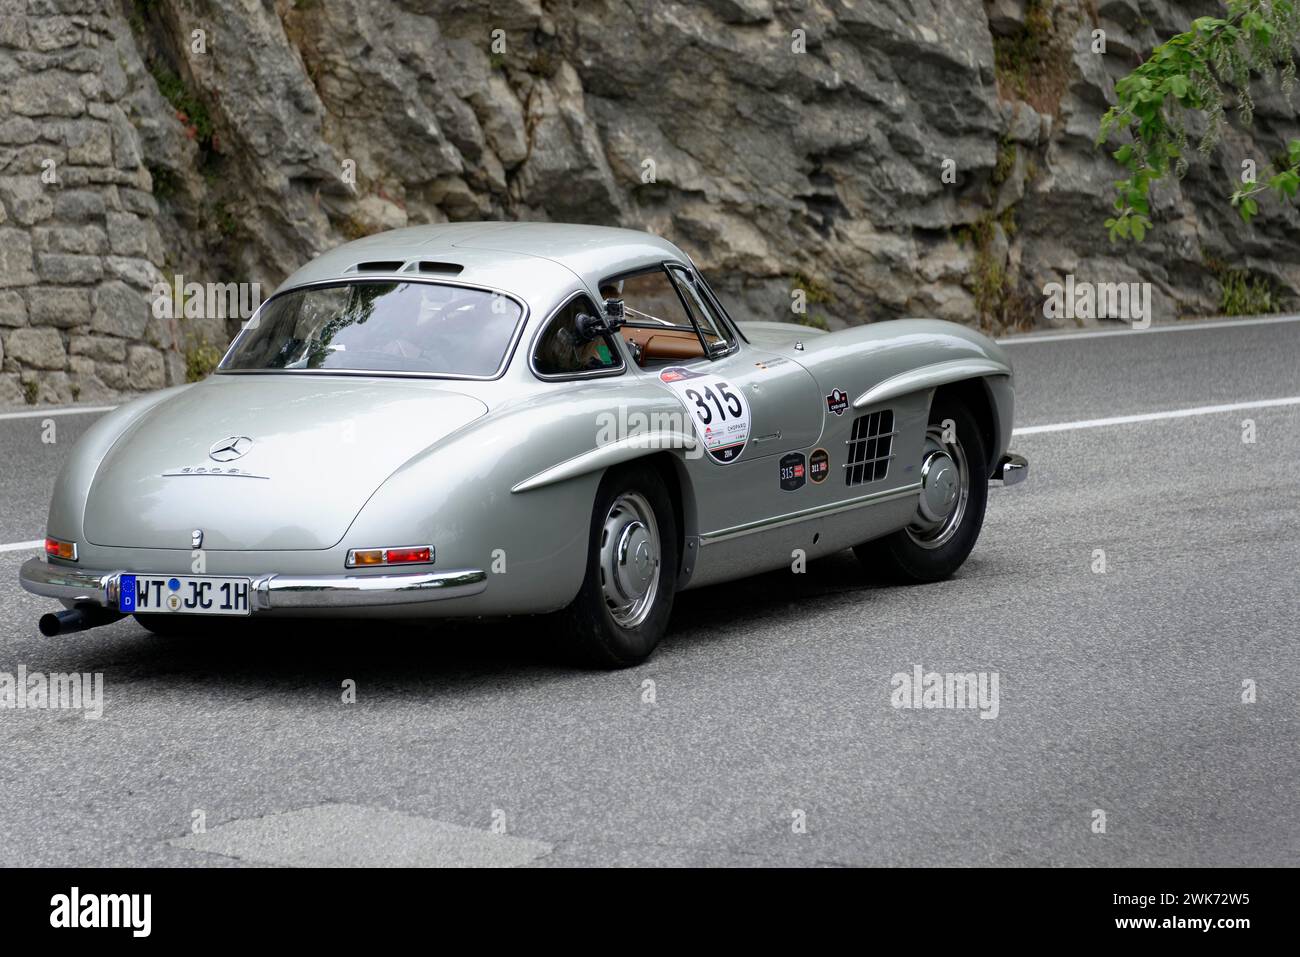 Mille Miglia 2014 ou 1000 Miglia, No. 315, Mercedes-Benz 300 SL W 198, année modèle 1954, course de voitures classiques, Saint-Marin, Italie Banque D'Images